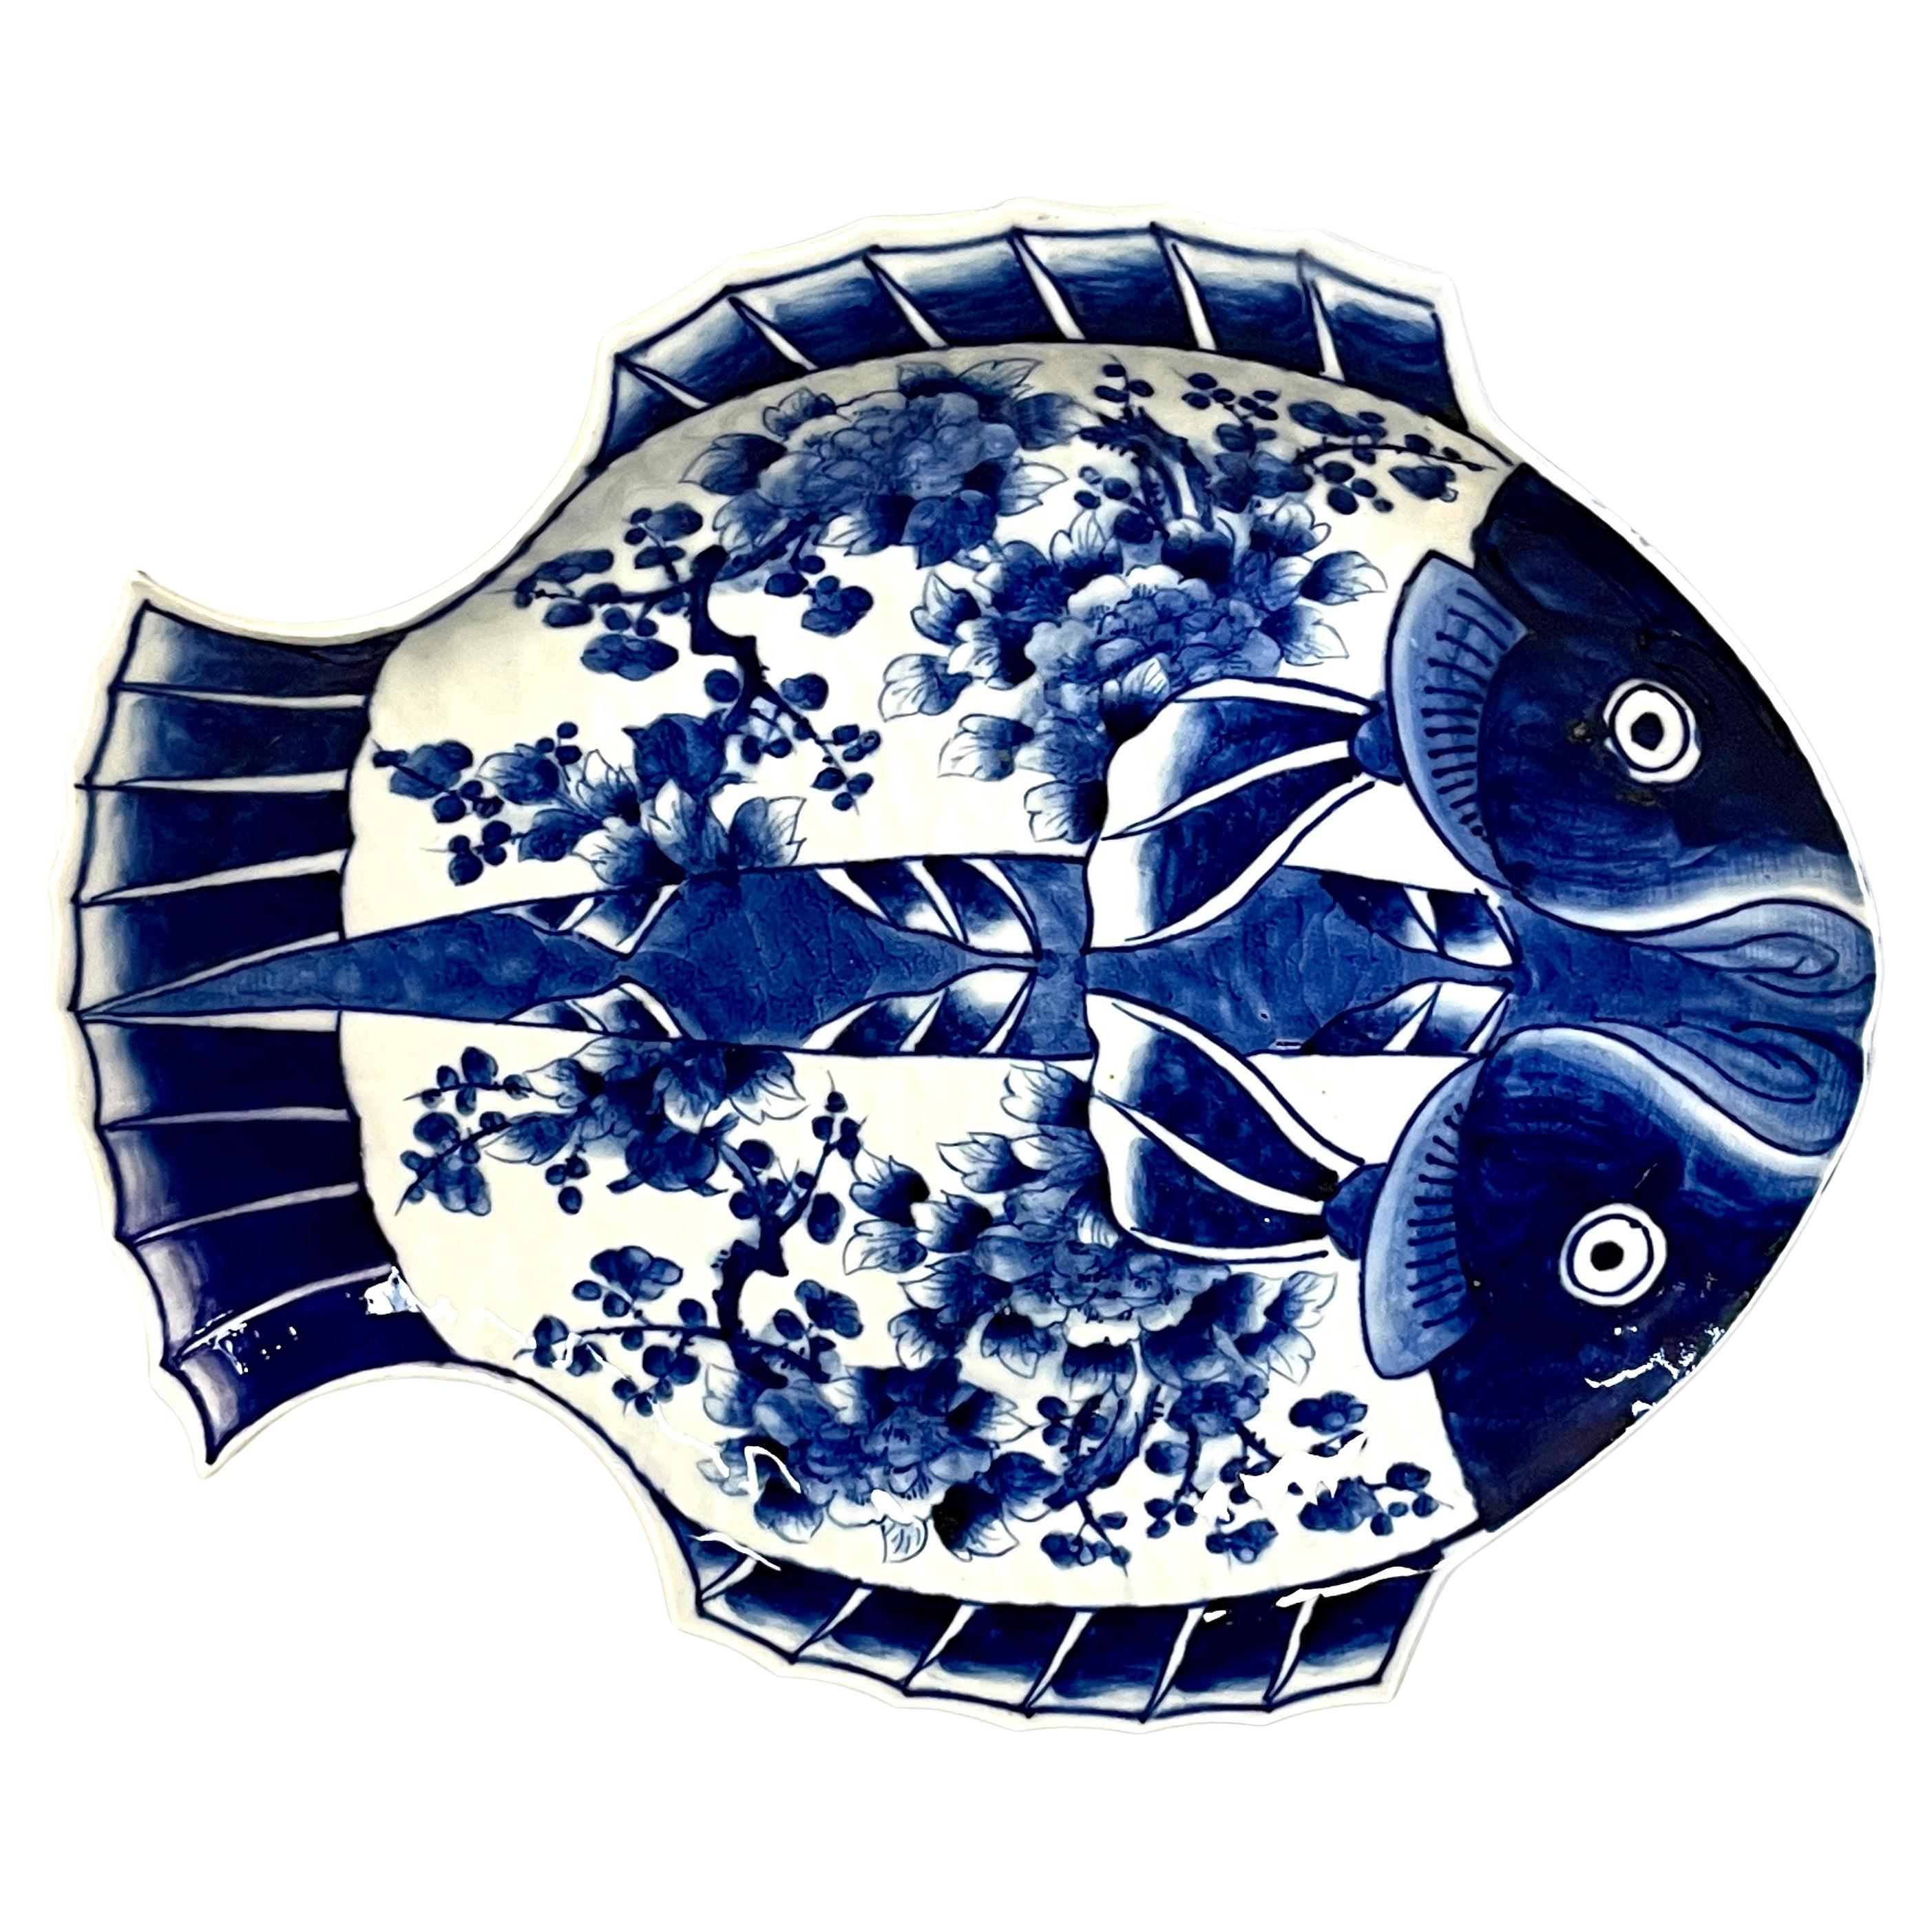 Meiji Periode Signiert Fukagawa Blau-Weiß Fisch 'Flunder' Teller